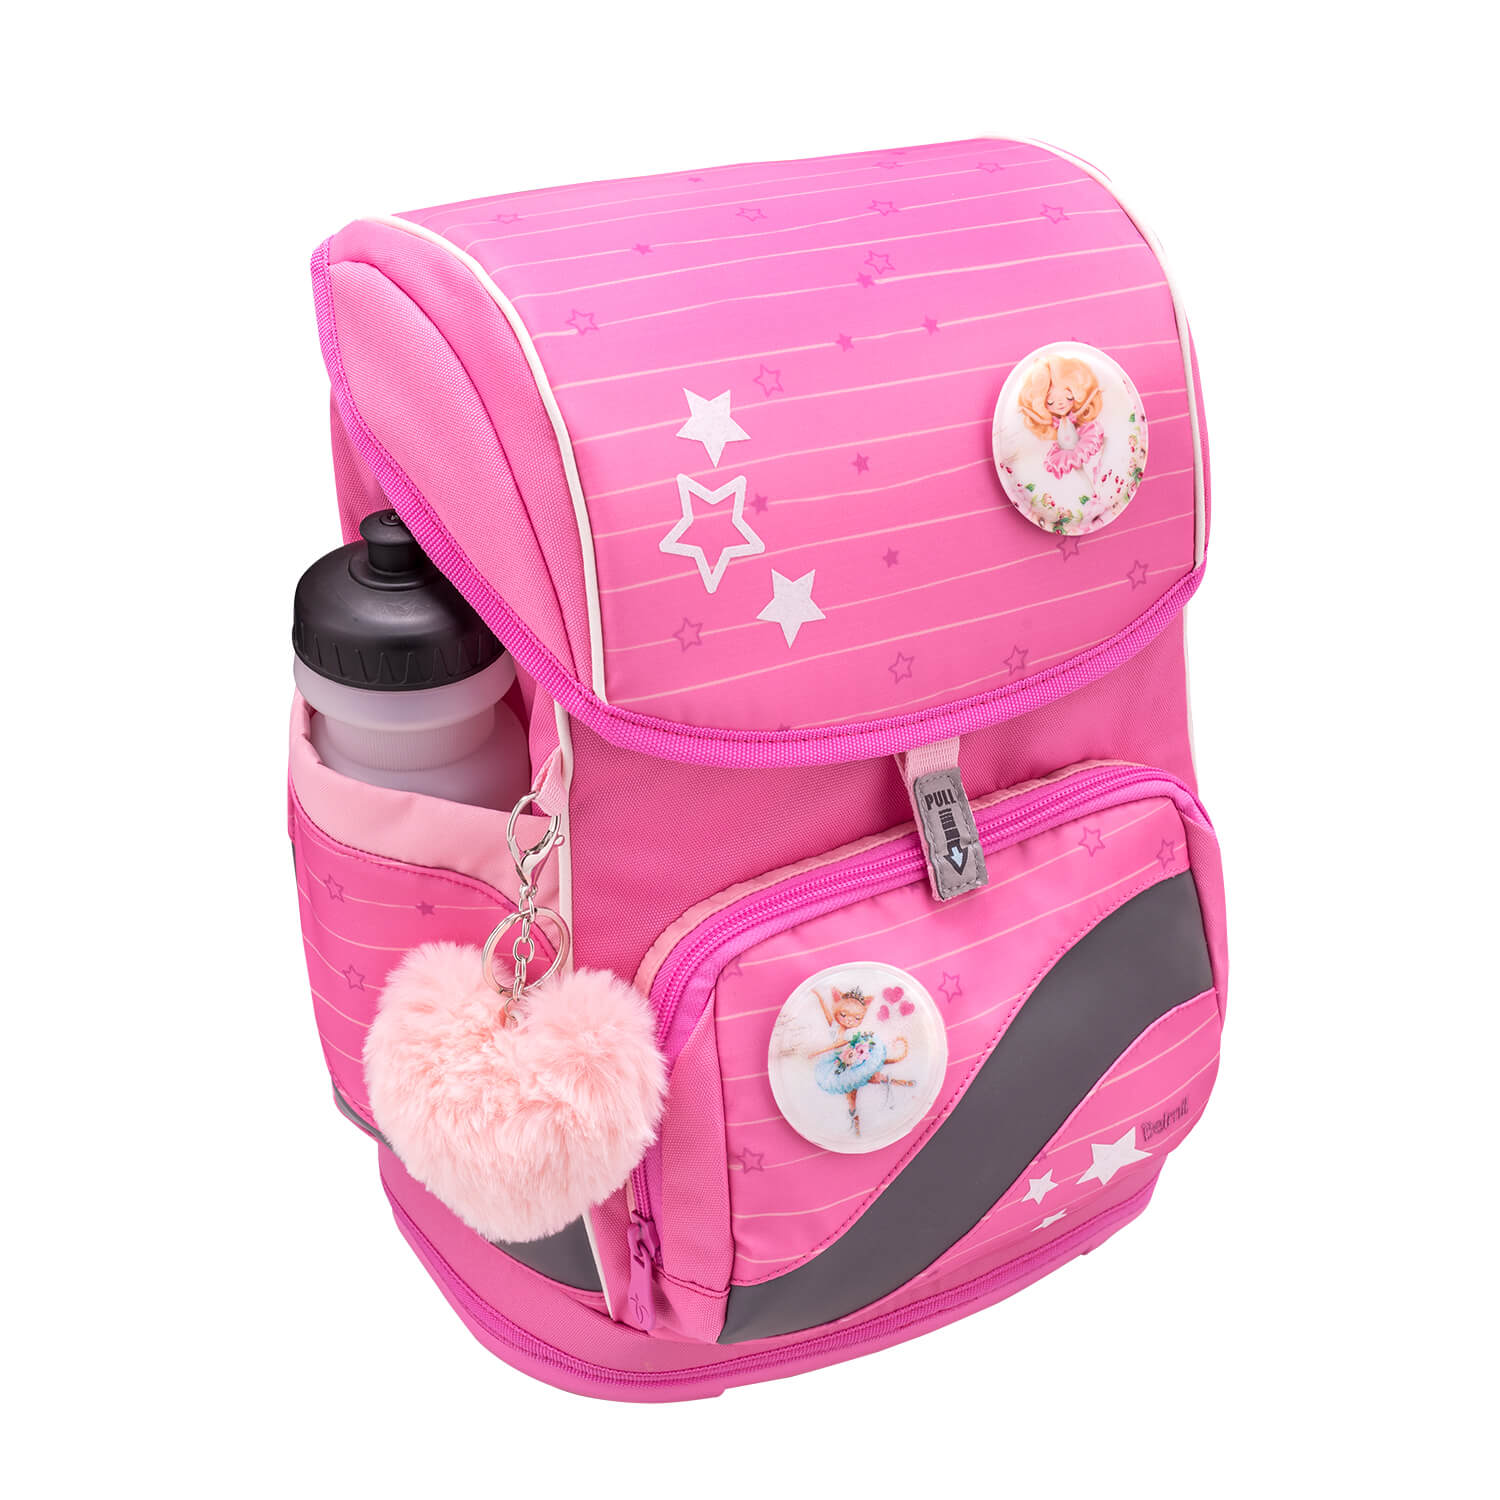 Smarty Plus Candy Schoolbag set 5pcs.